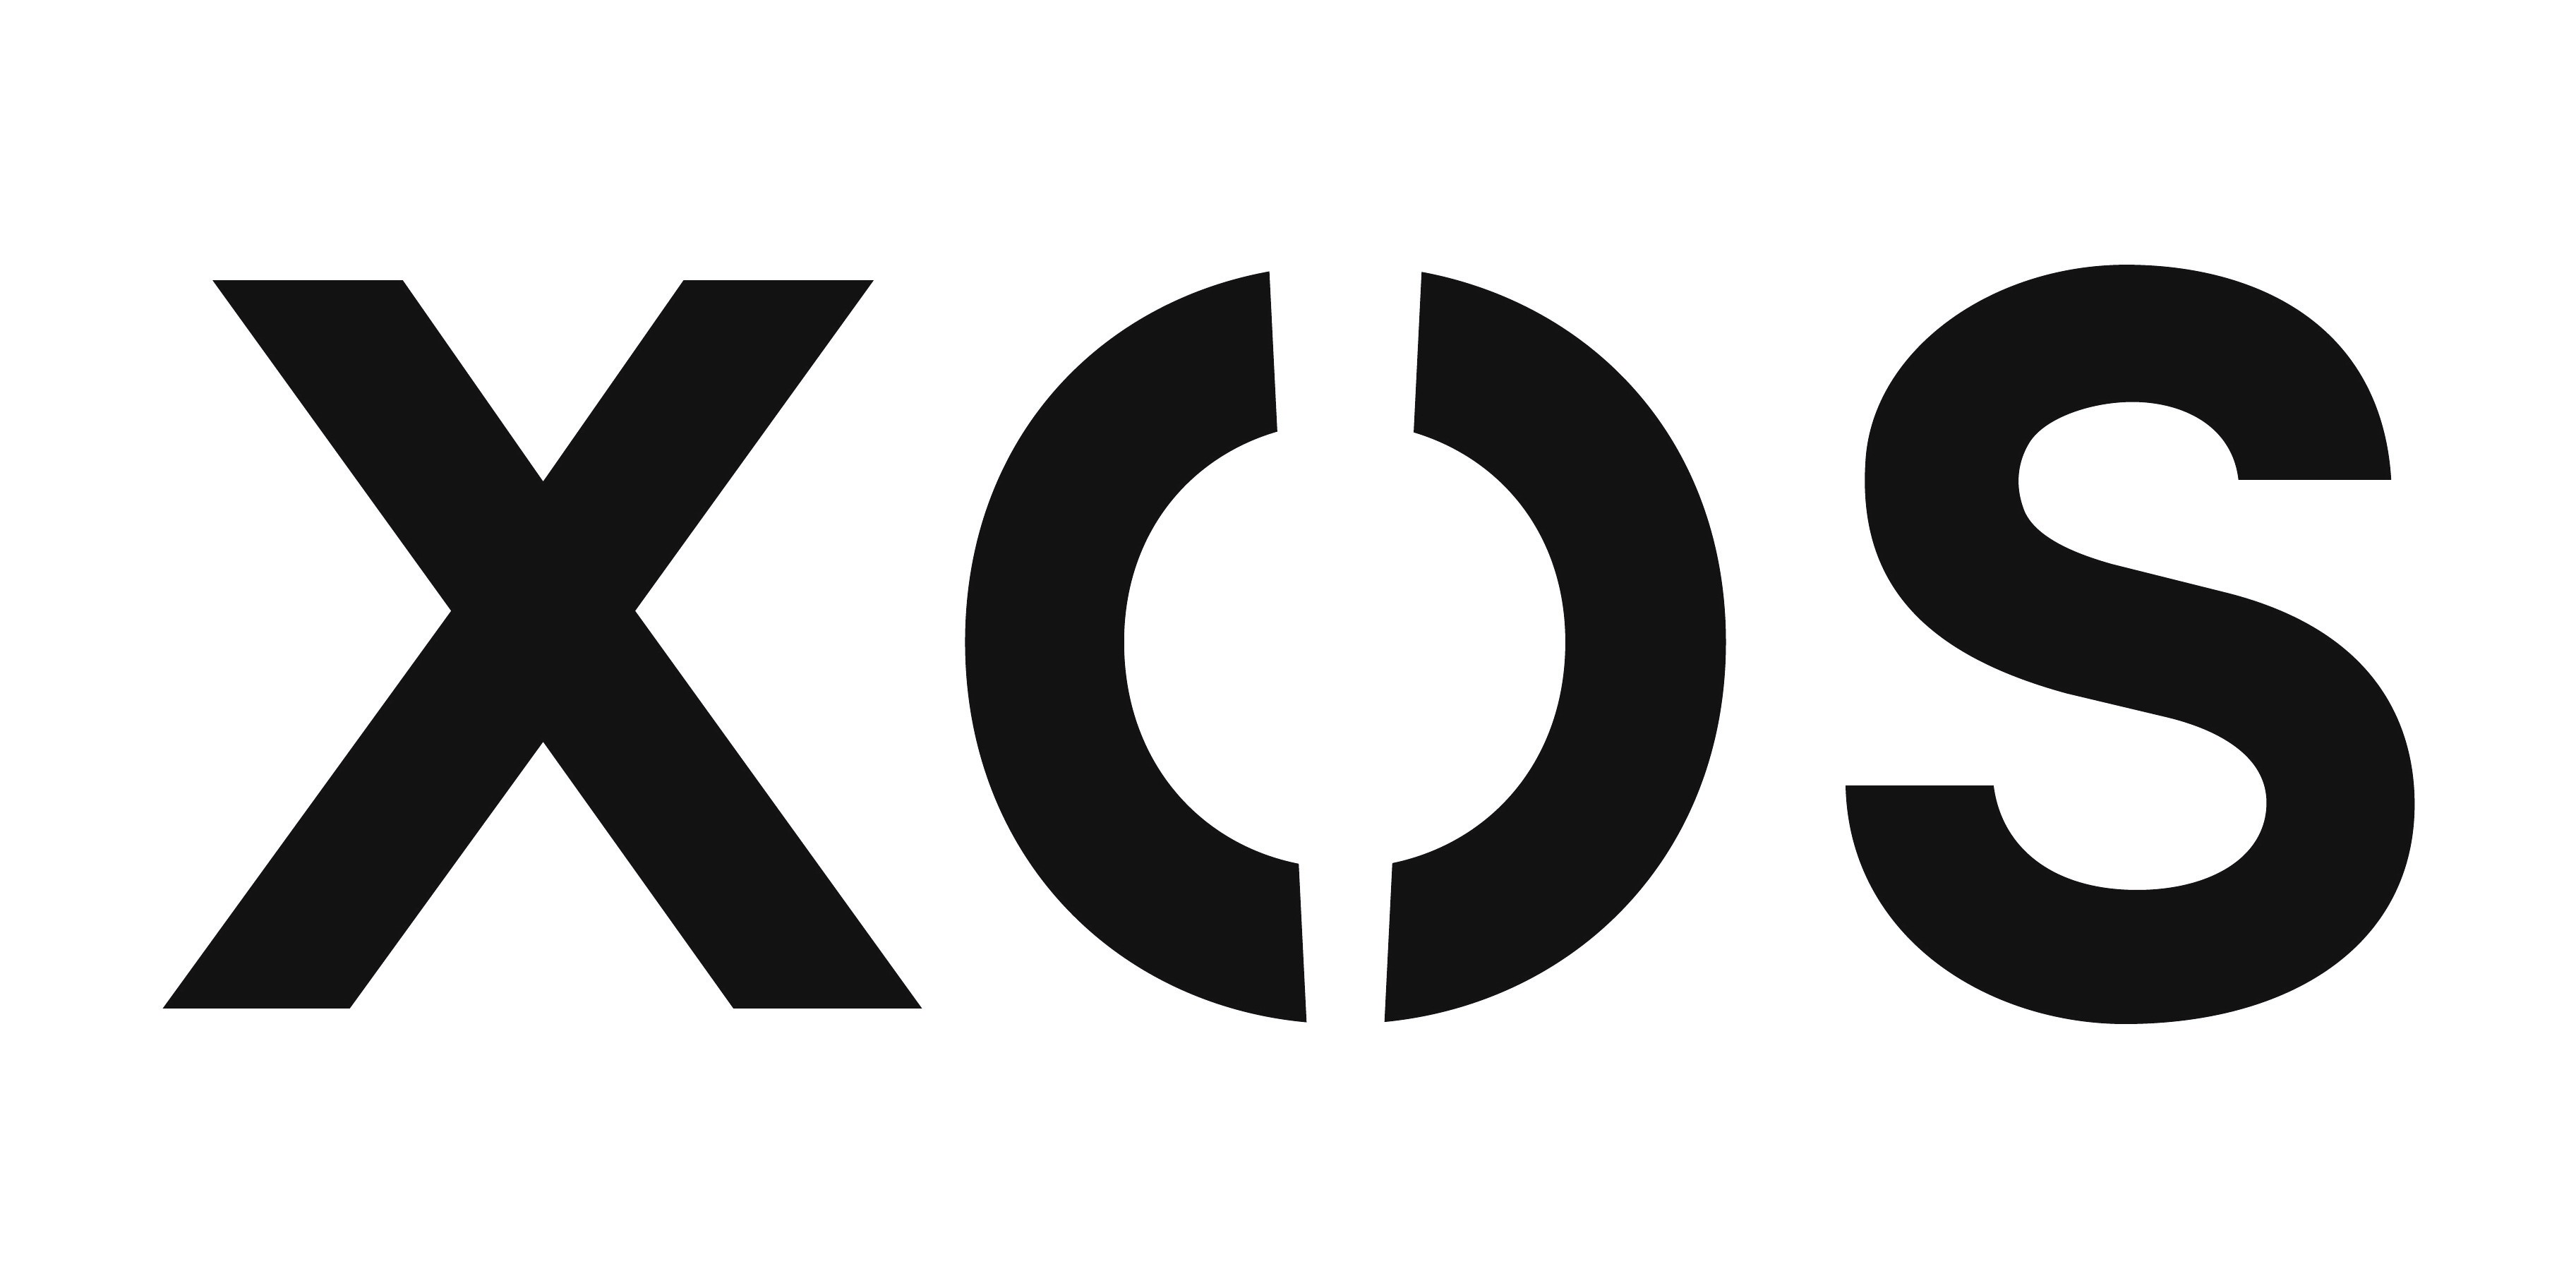 Xos_Logo_wm-black-white-background (2).jpg